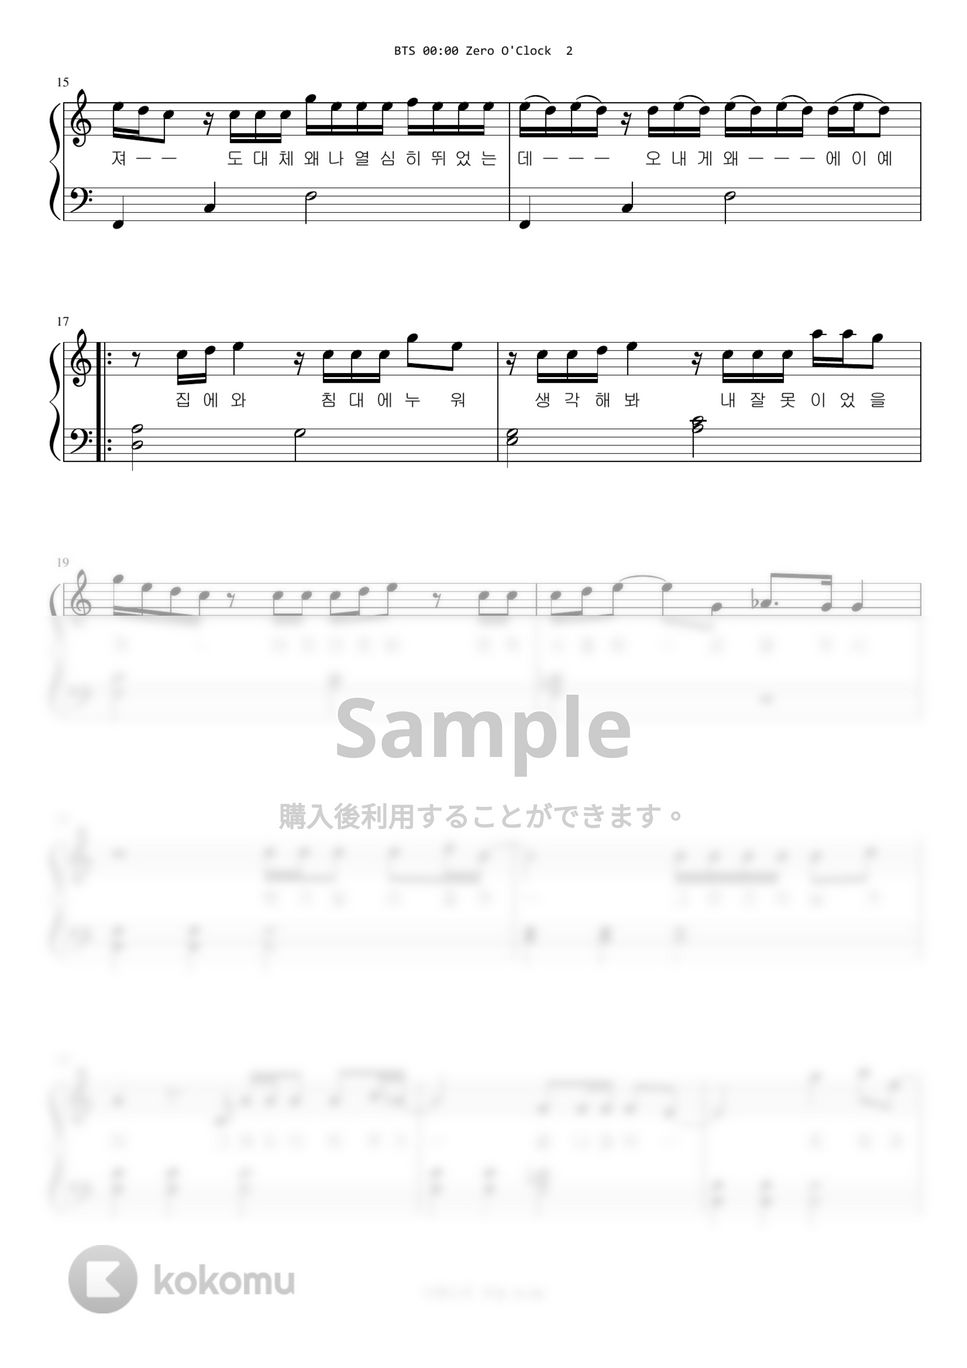 防弾少年団(BTS) - 00:00 (Easy Version) by A.Ha